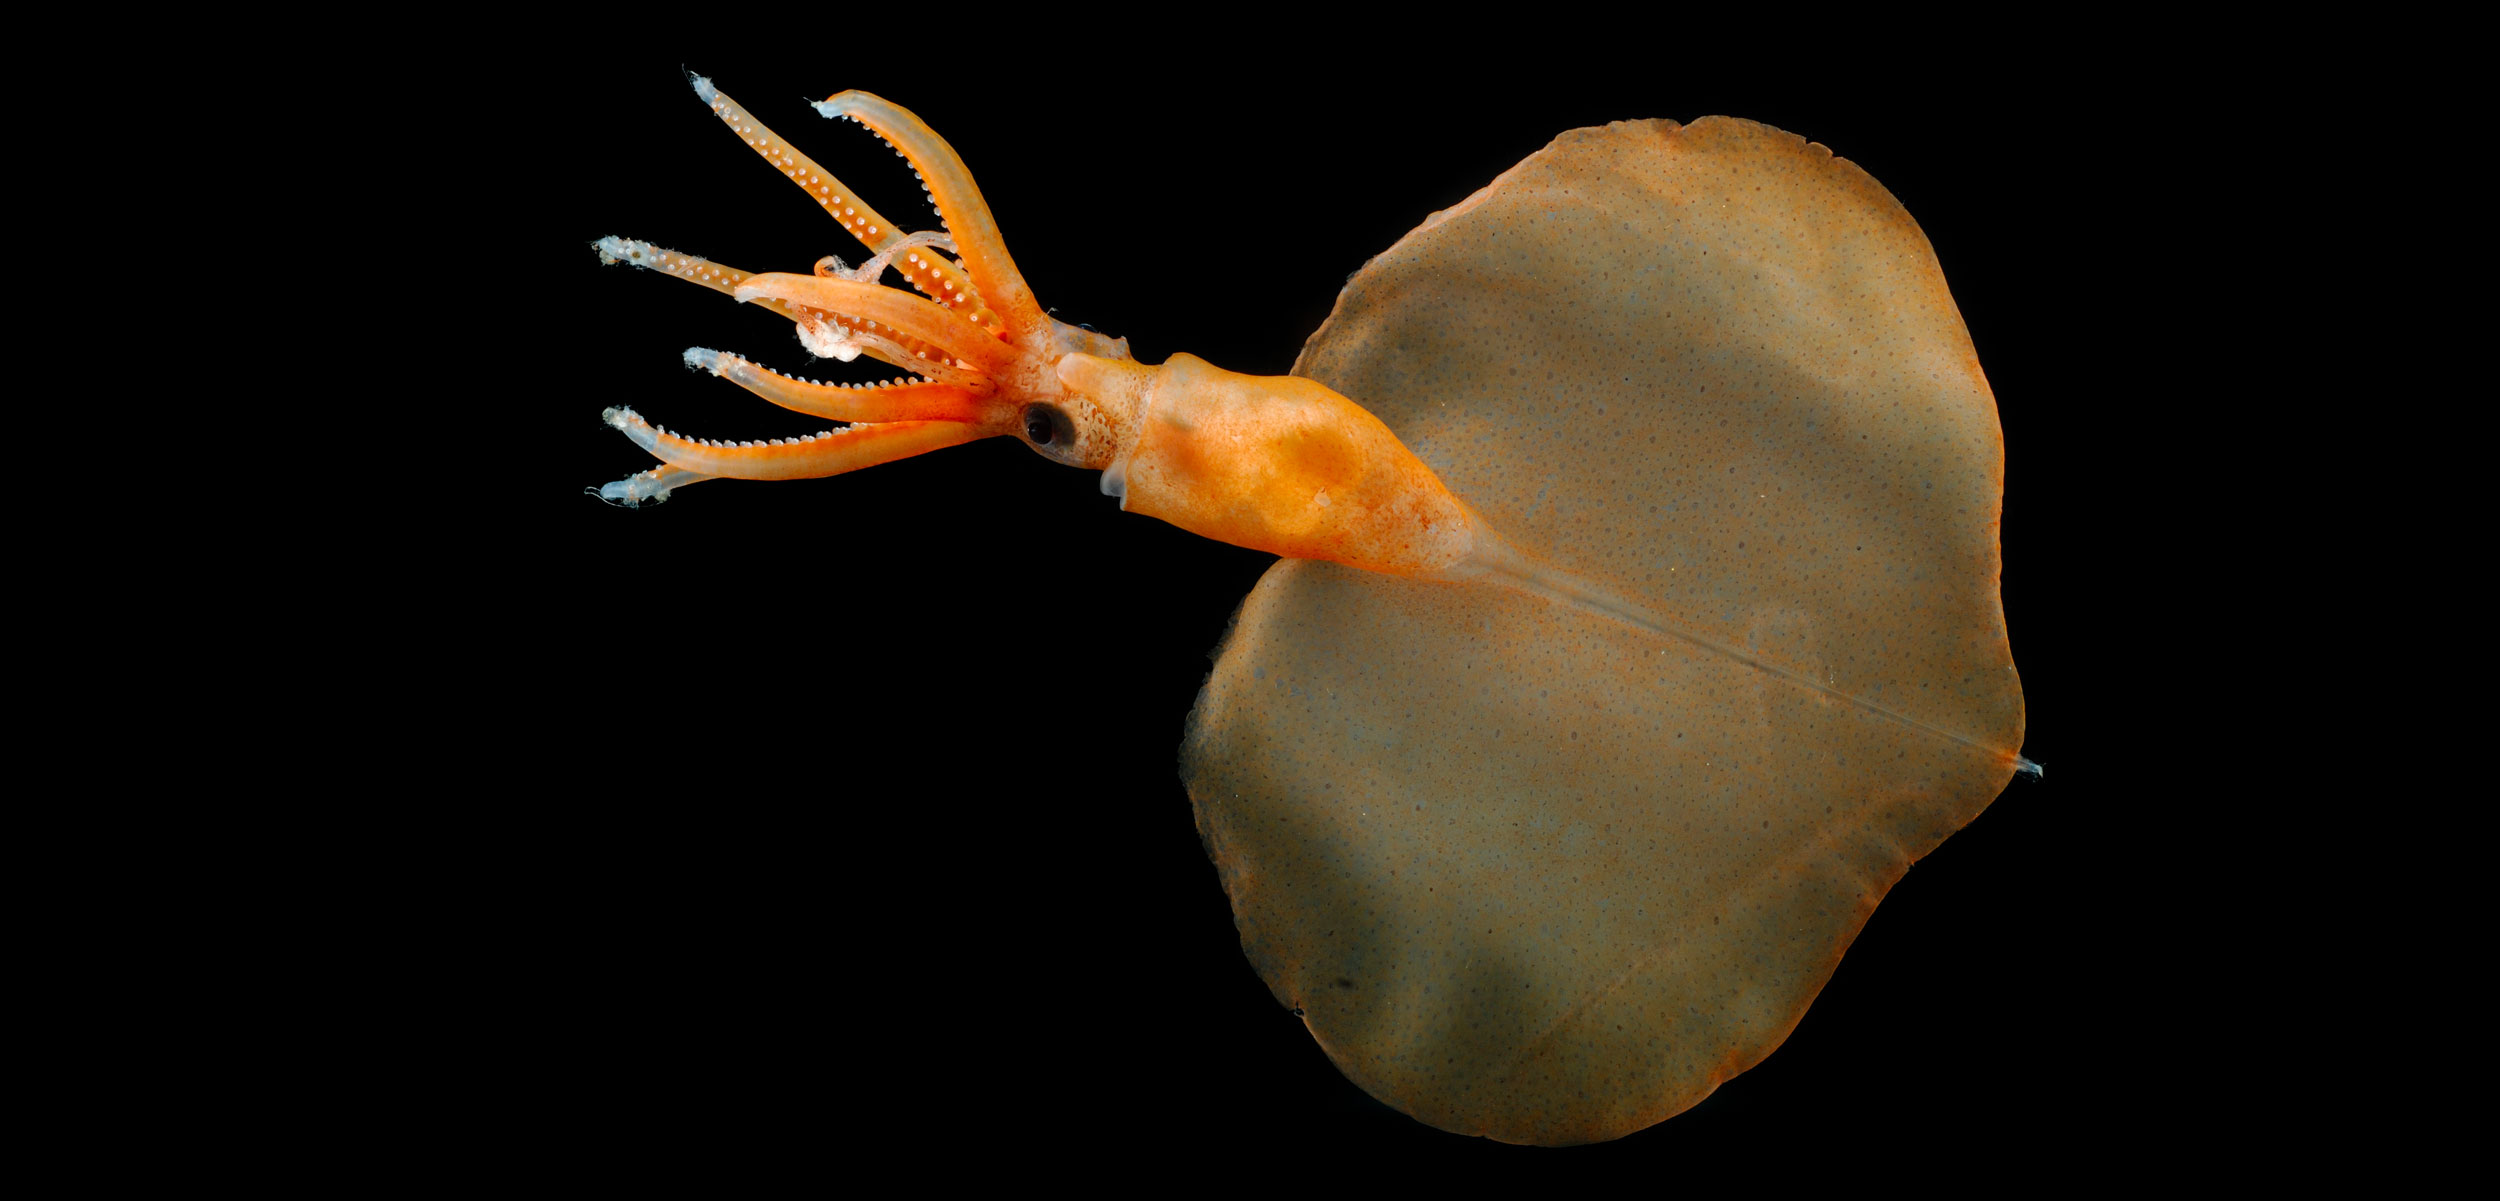 magnapinnid or bigfin squid